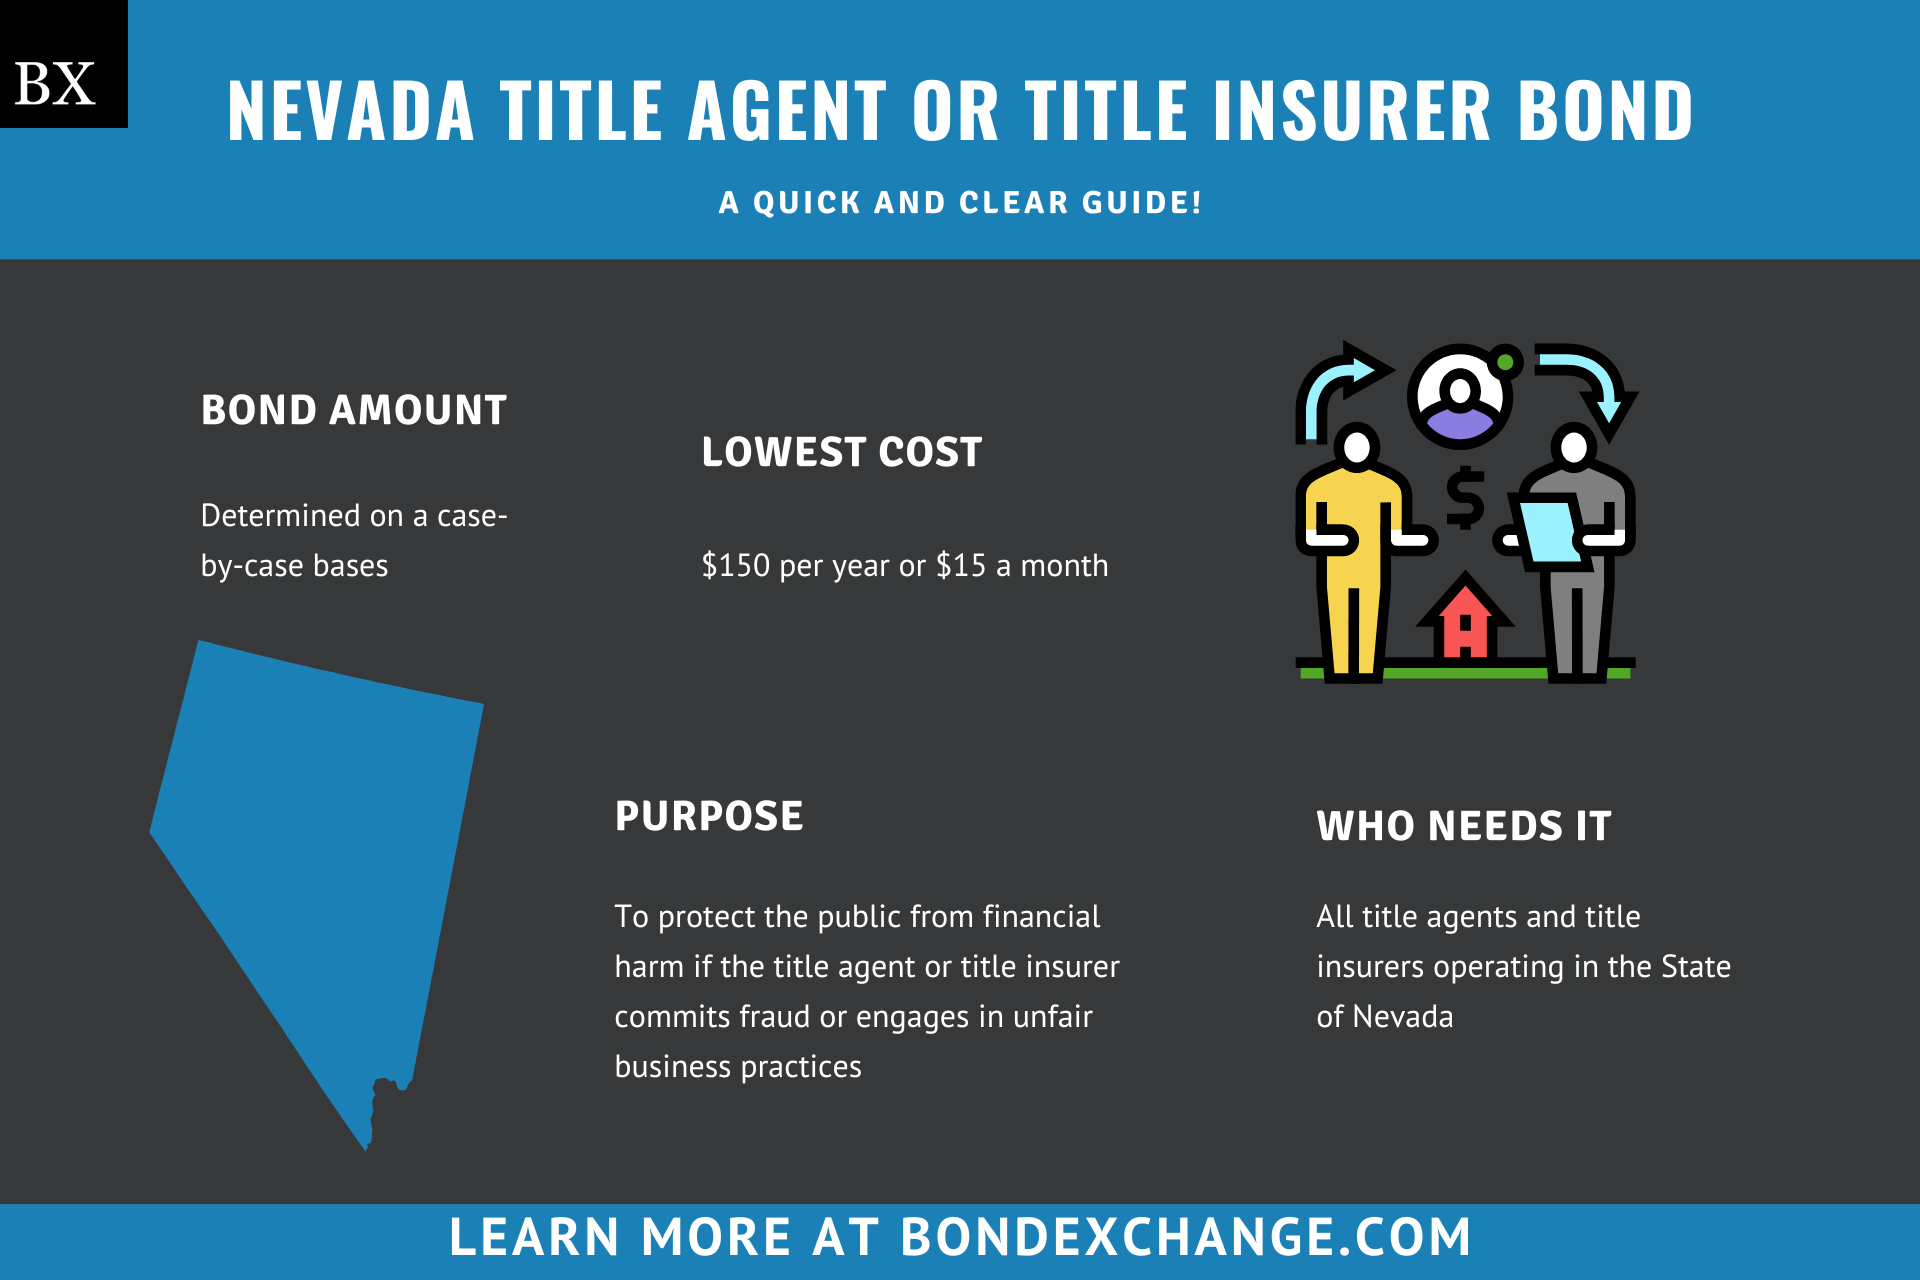 Nevada Title Agent or Title Insurer Bond